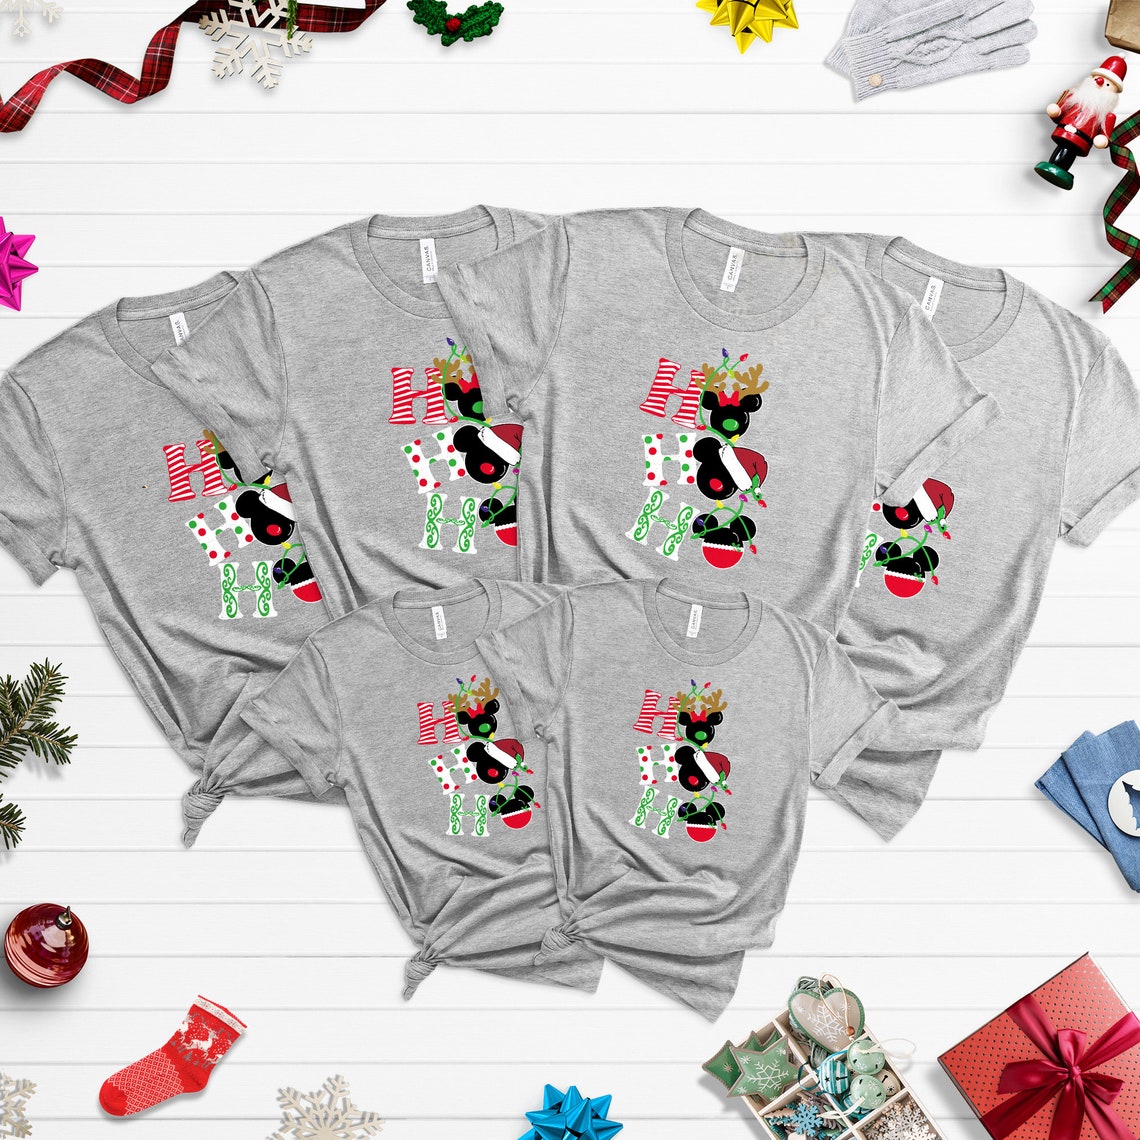 Disney Christmas tees, HOHOHO shirts, Disney Christmas shirt, Christmas family shirts, Disney Christmas, Chrismtas shirt